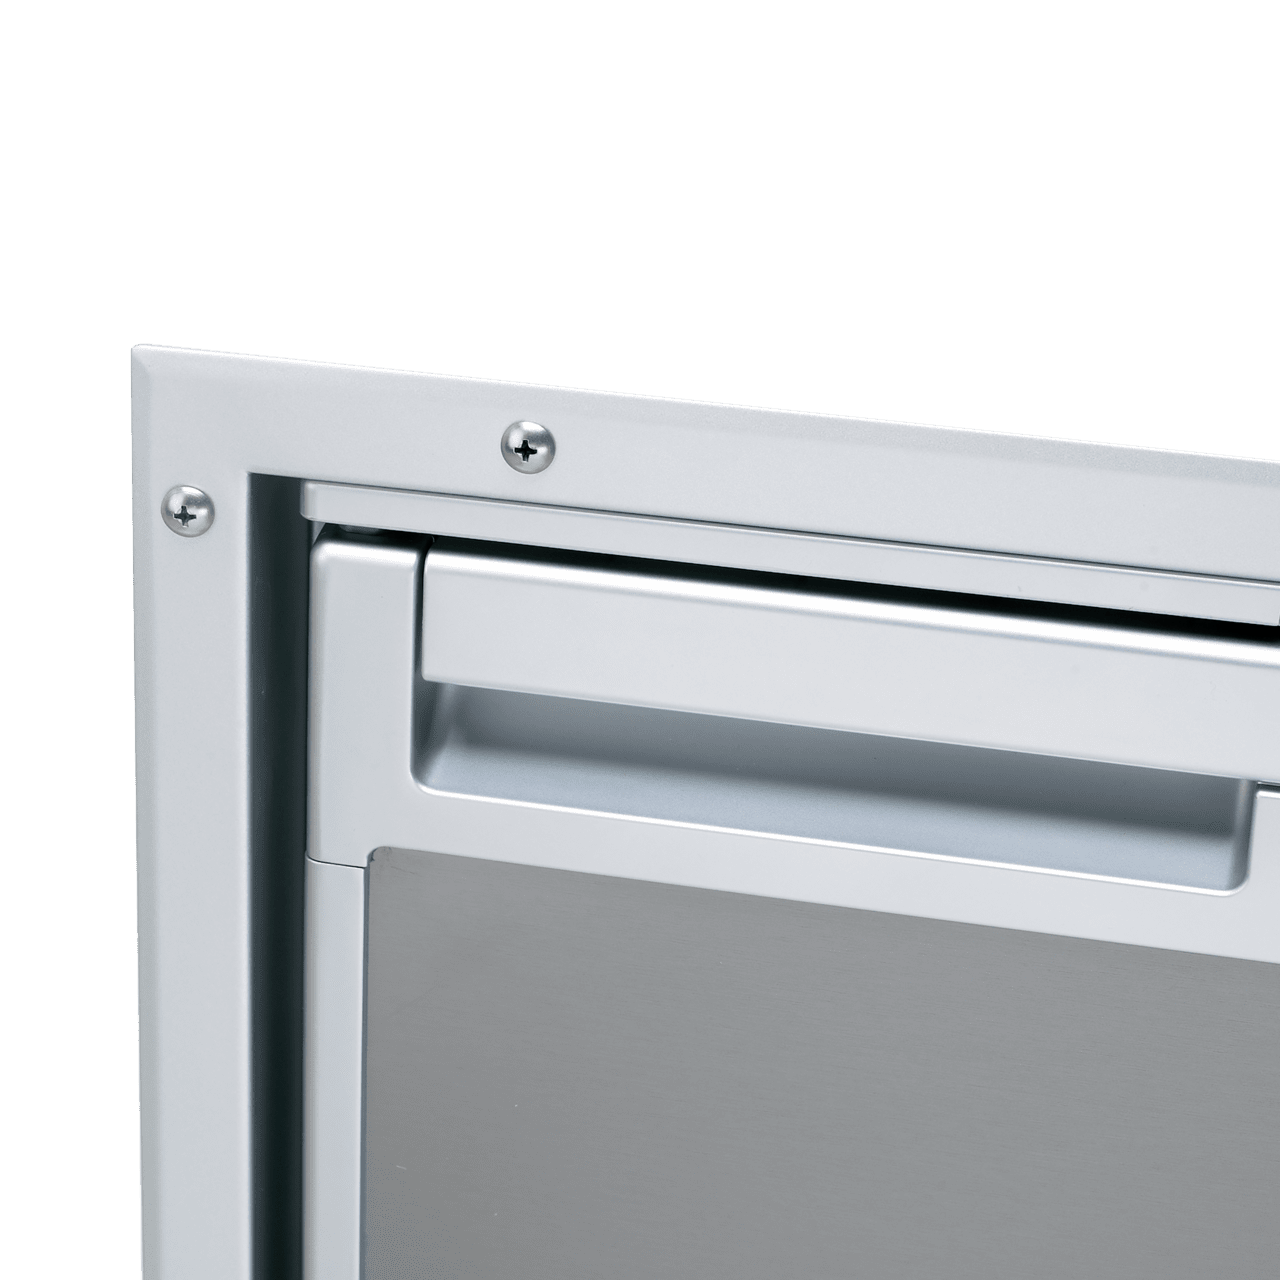 картинка Рамка крепёжная для встройки холодильника C115i, цвет серый, дверь утоплена заподлицо